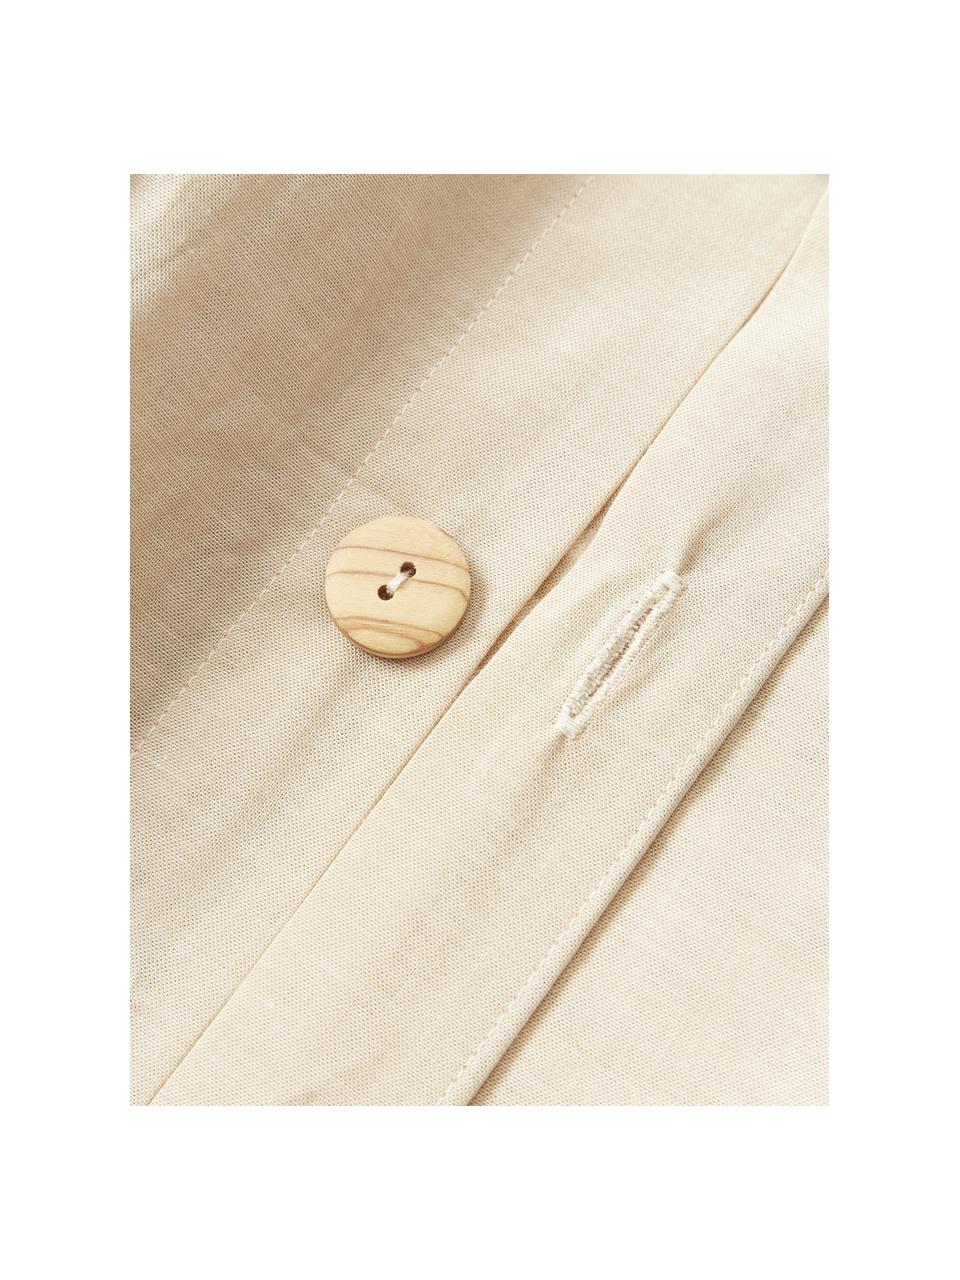 Housse de couette en coton seersucker à carreaux Davey, Beige, blanc, larg. 200 x long. 200 cm